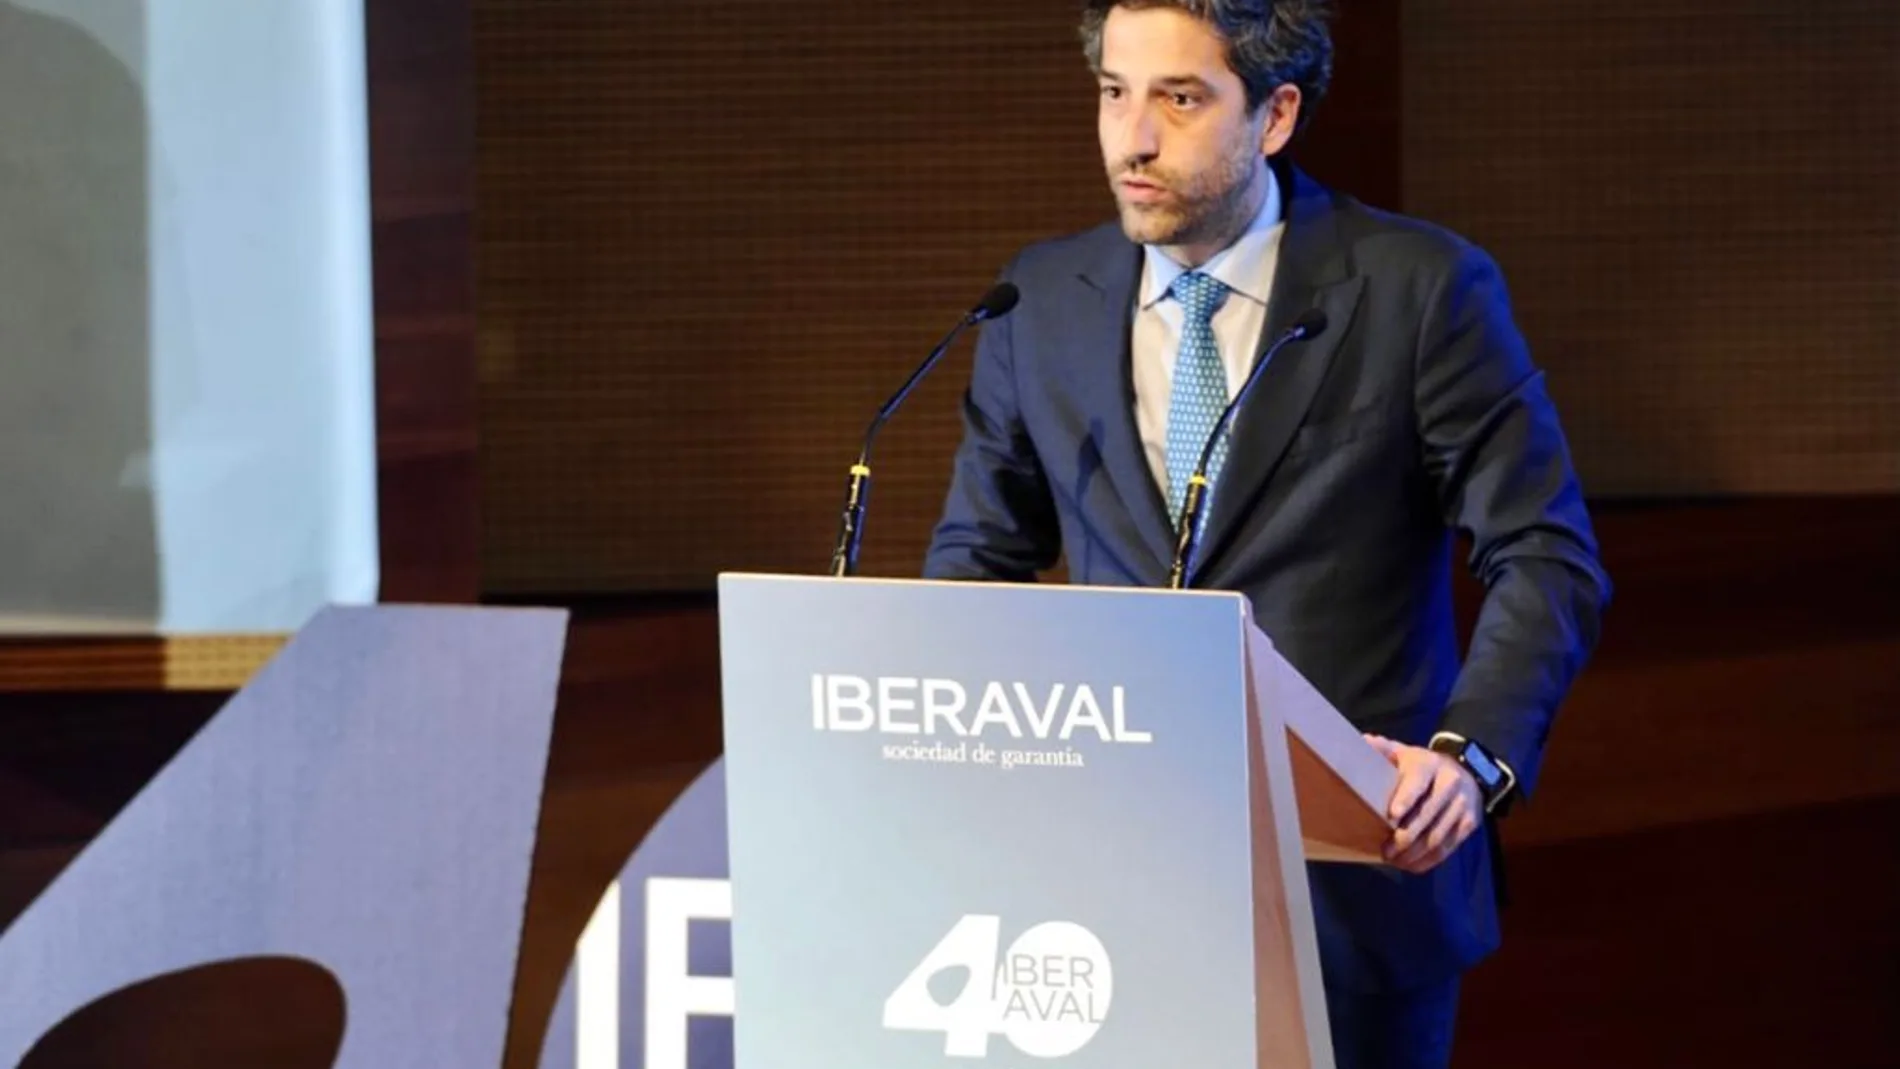 El presidente de Iberaval, César Pontvianne, interviene en el acto del 40 cumpleaños de la Sociedad